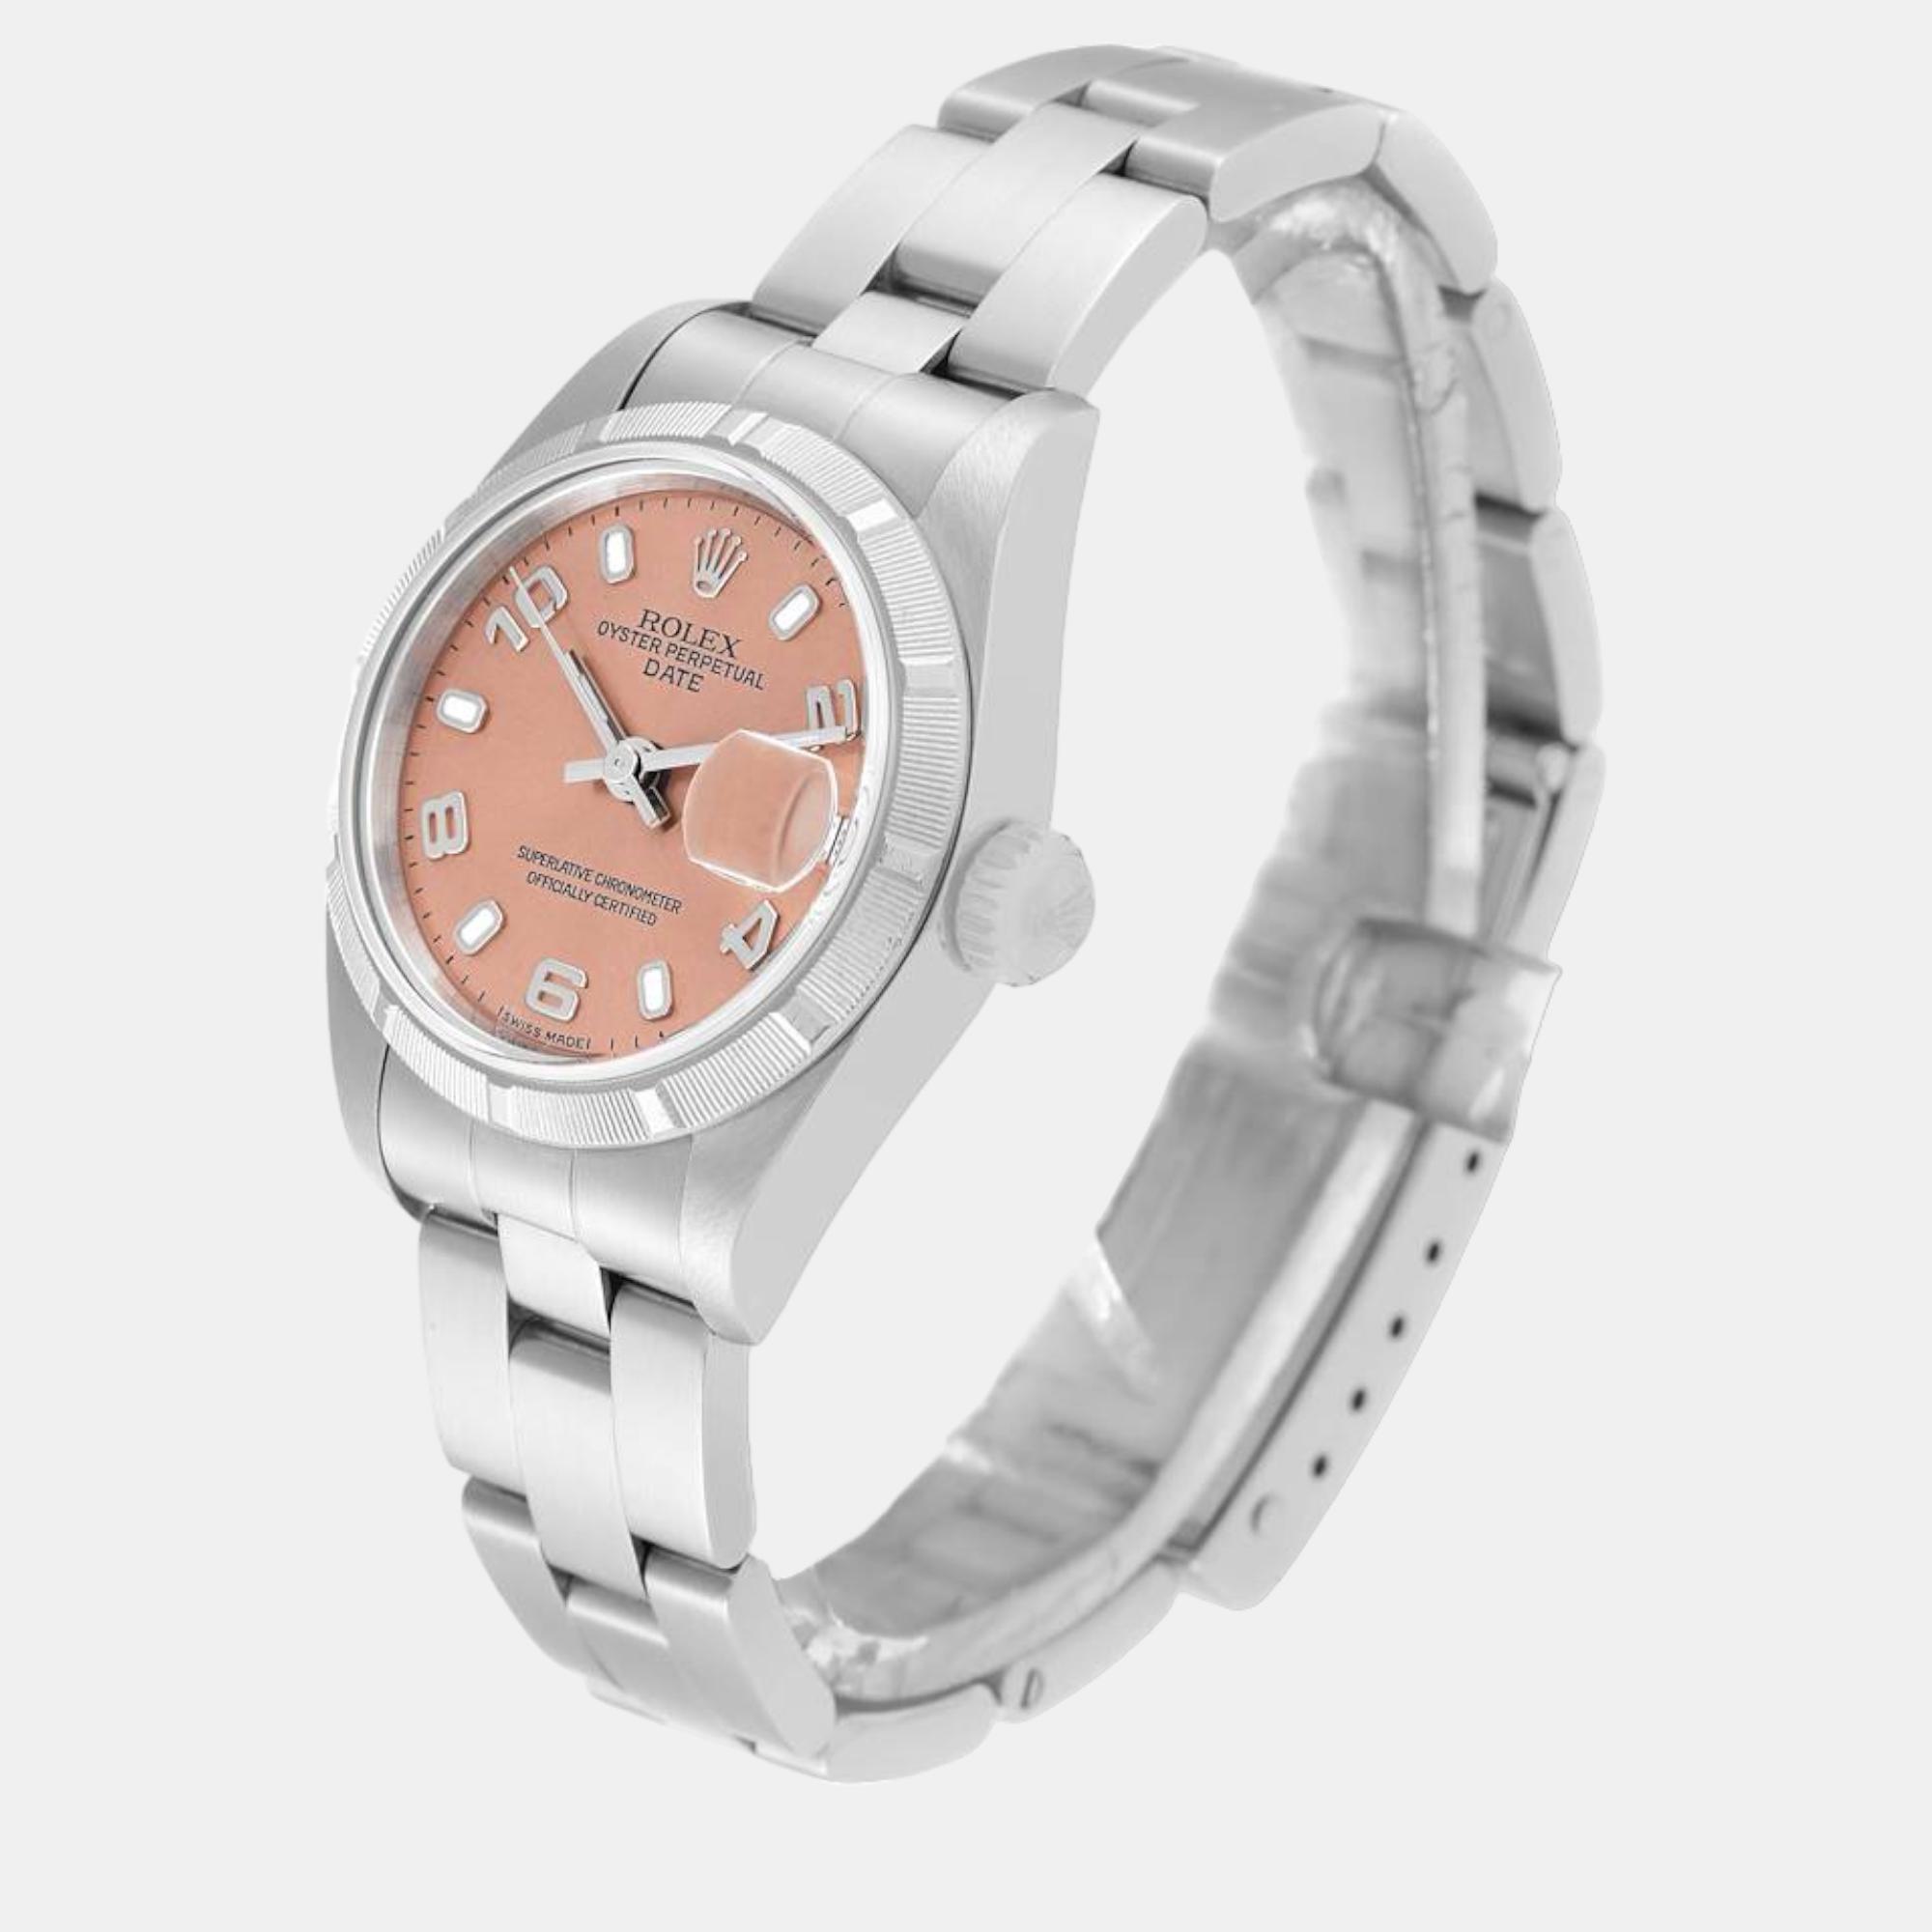 Rolex Date Salmon Dial Oyster Bracelet Steel Ladies Watch 79190